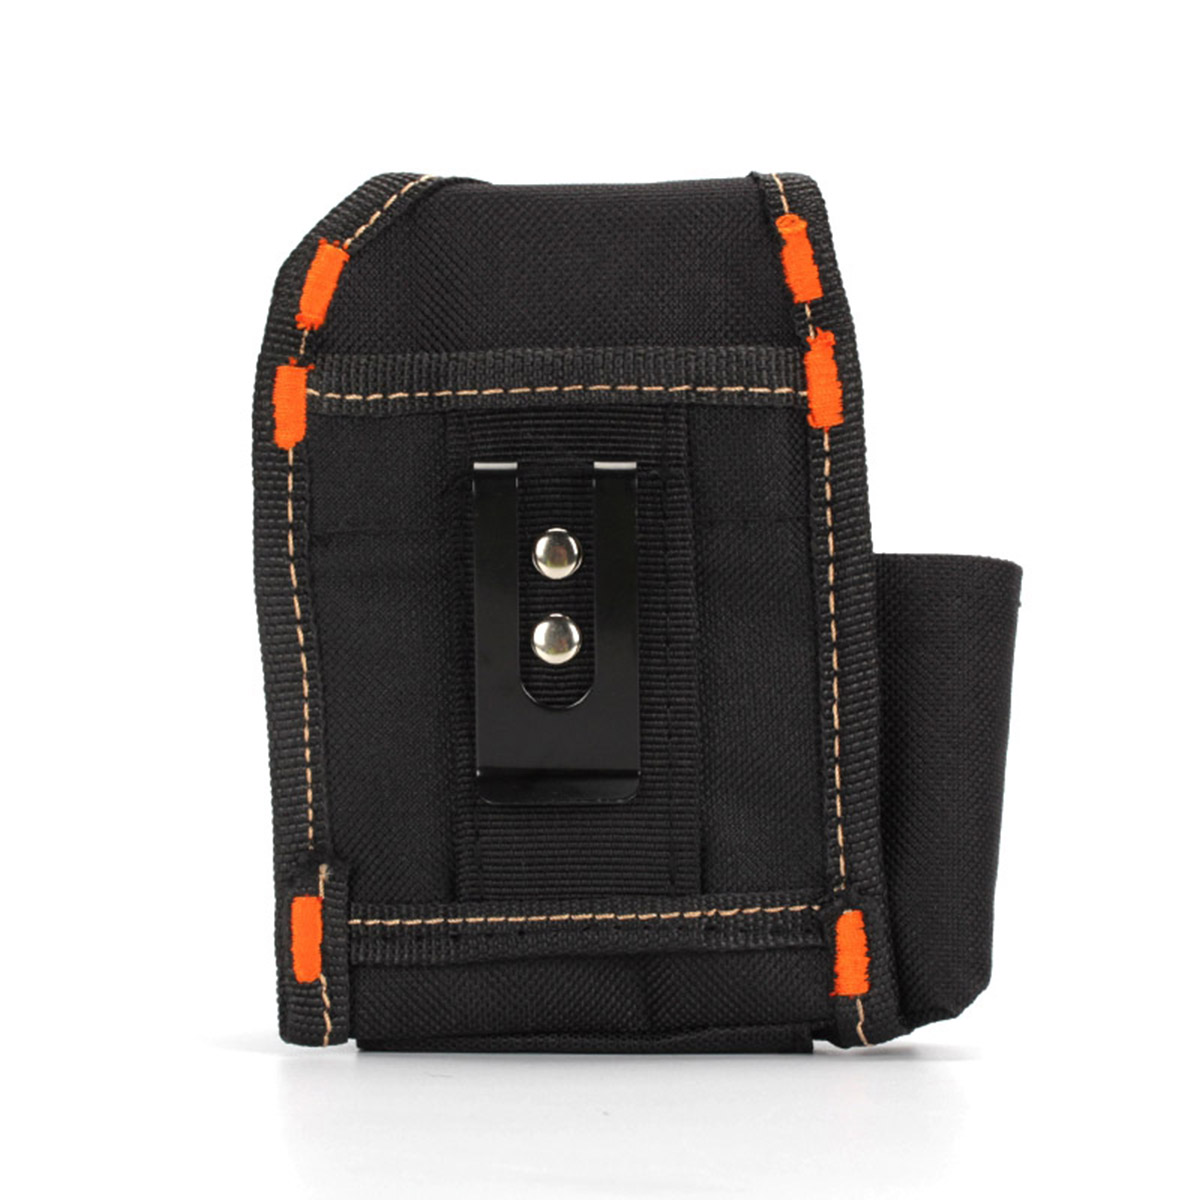 Mini Vape Pocket Waist Bag Electronic Cigarette Bag for Box Mod Rda Kit VS UD Vape Bag X9 Carrying Bag